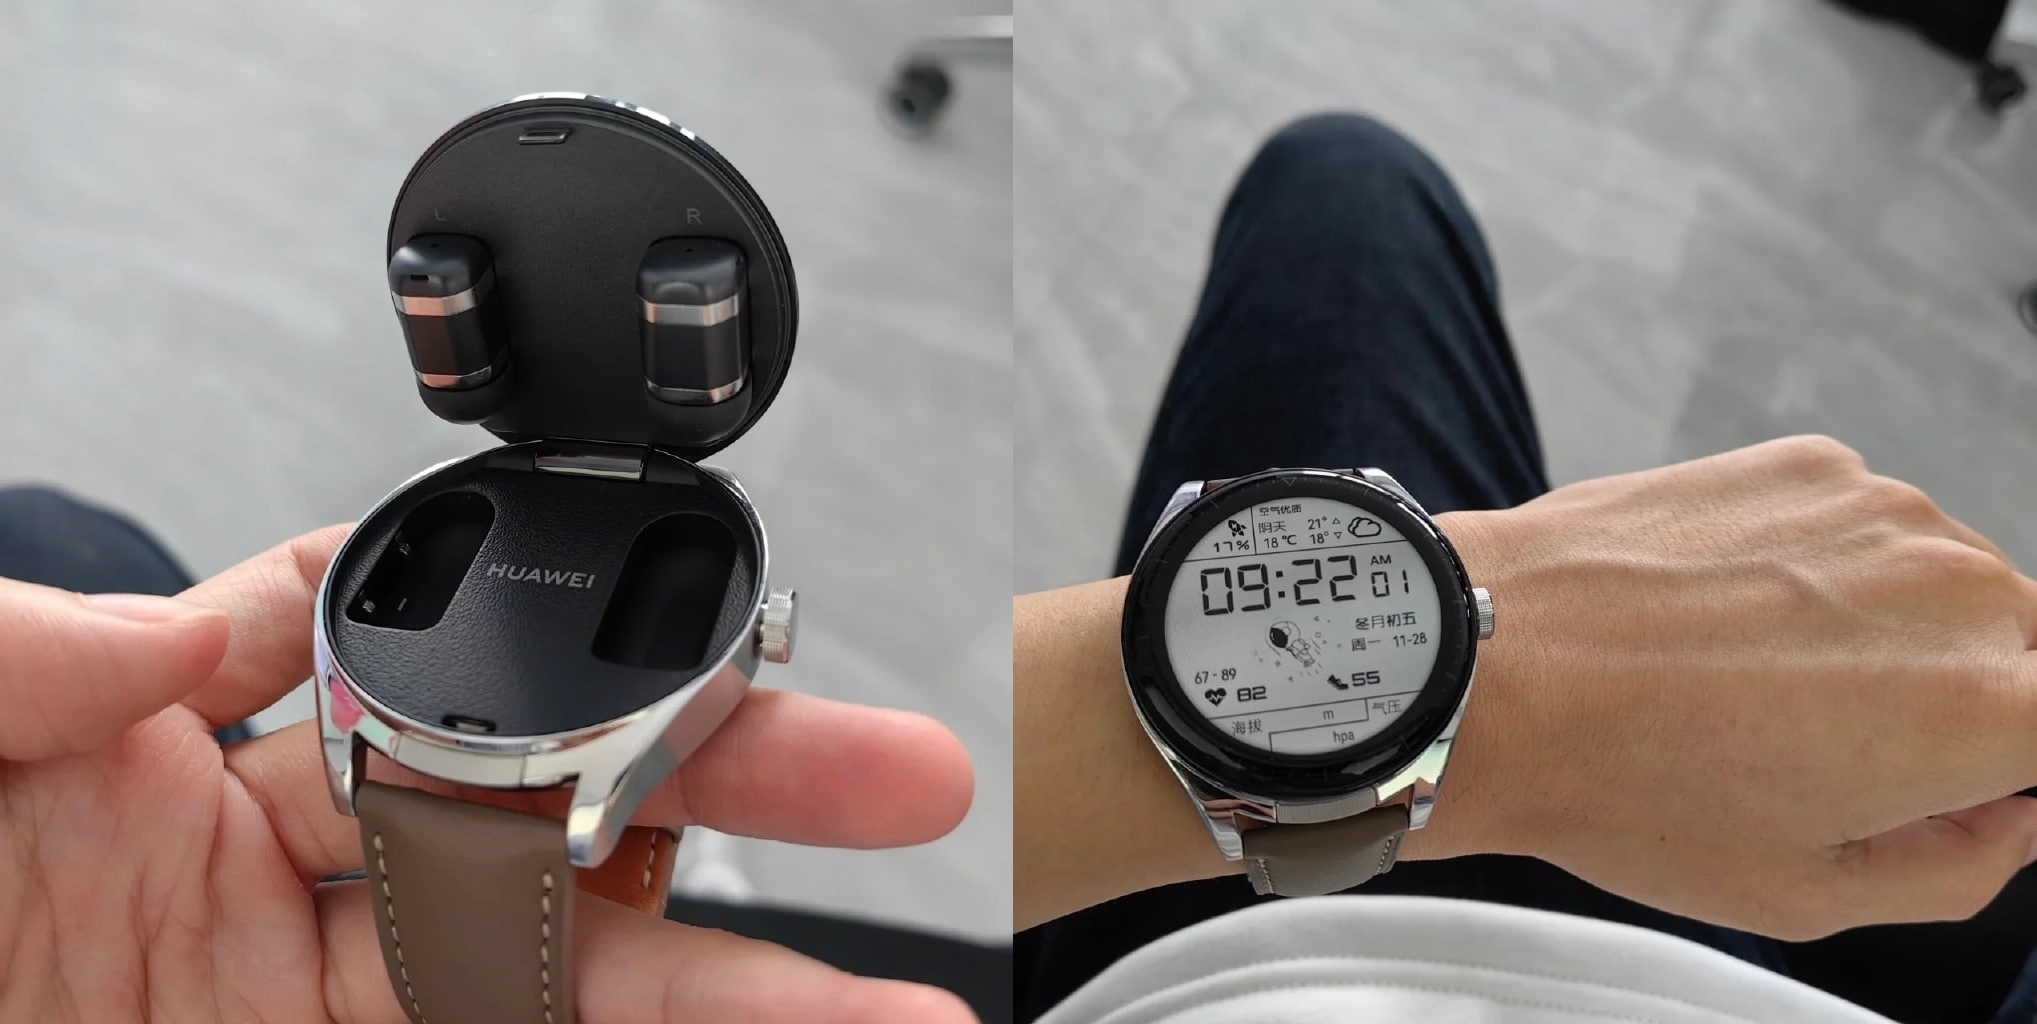 Ecco come sarà il Huawei Watch Buds: uno smartwatch con auricolari TWS integrati